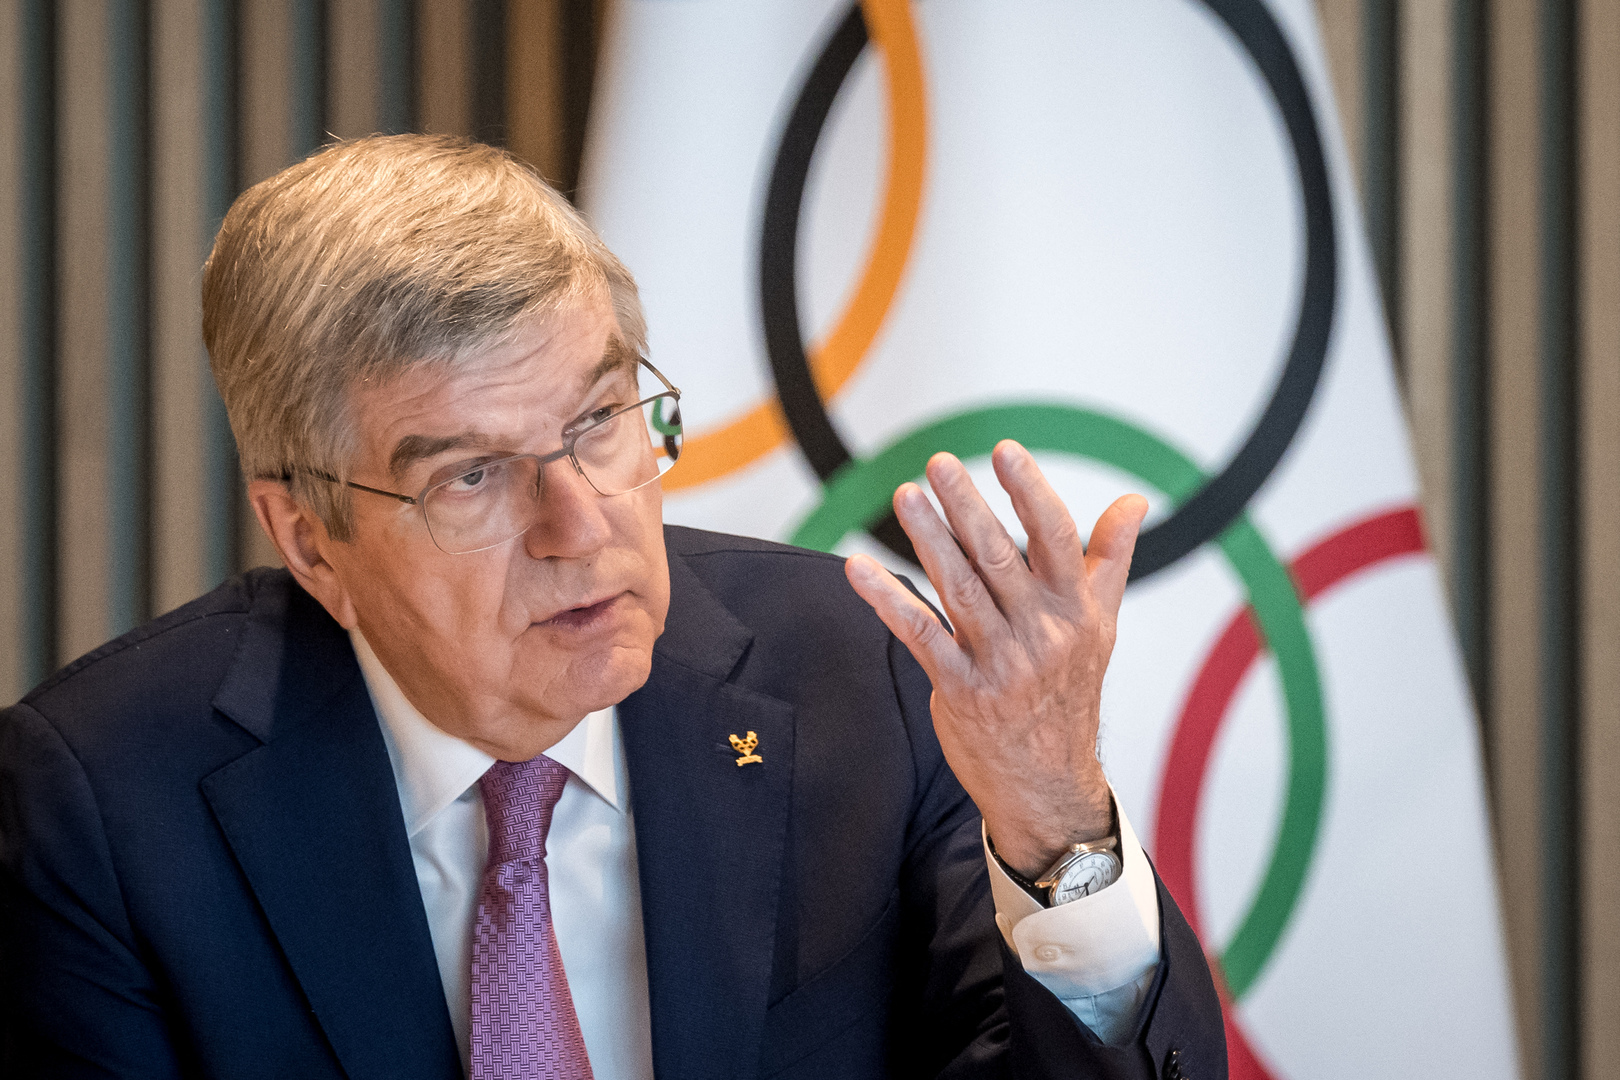 رئيس اللجنة الأولمبية الدولية يوضح تأثير ألعاب الصداقة على سلامة أوكرانيا